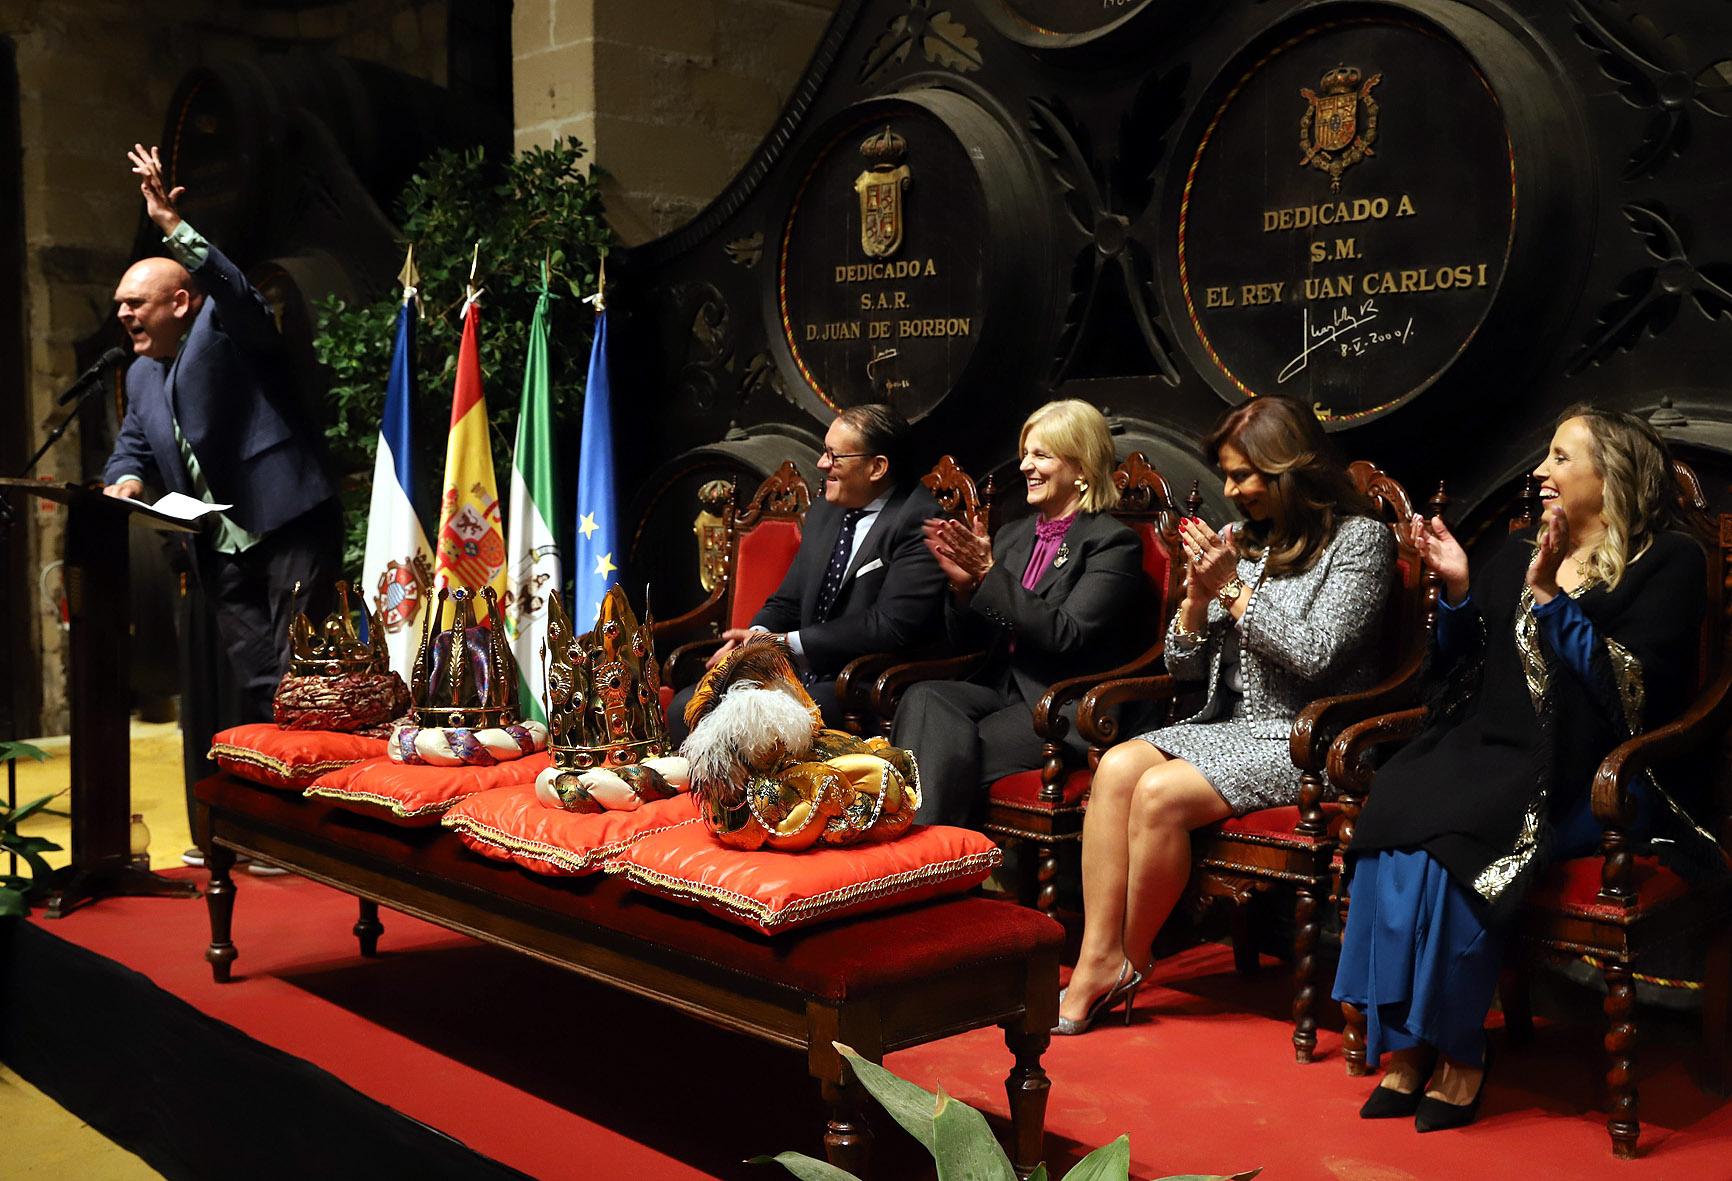 Luis Lara, Ana María Orellana y Fernando Calderón, presentados oficialmente como representantes de los Reyes Magos en Jerez